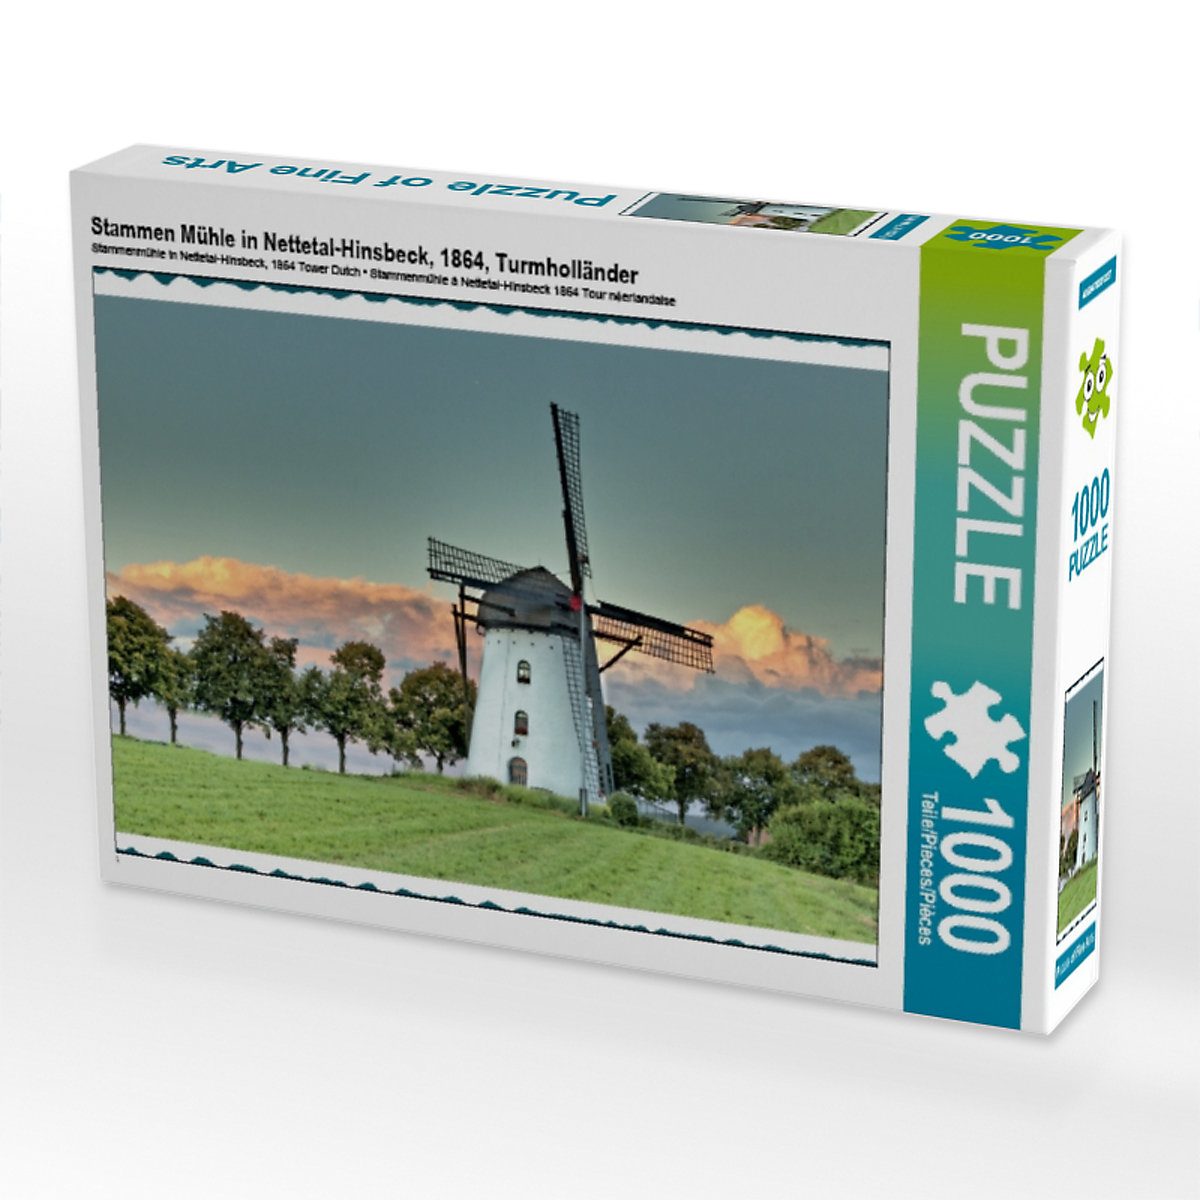 CALVENDO® Puzzle CALVENDO Puzzle Stammen Mühle in Nettetal-Hinsbeck 1864 Turmholländer 1000 Teile Foto-Puzzle für glückliche Stunden